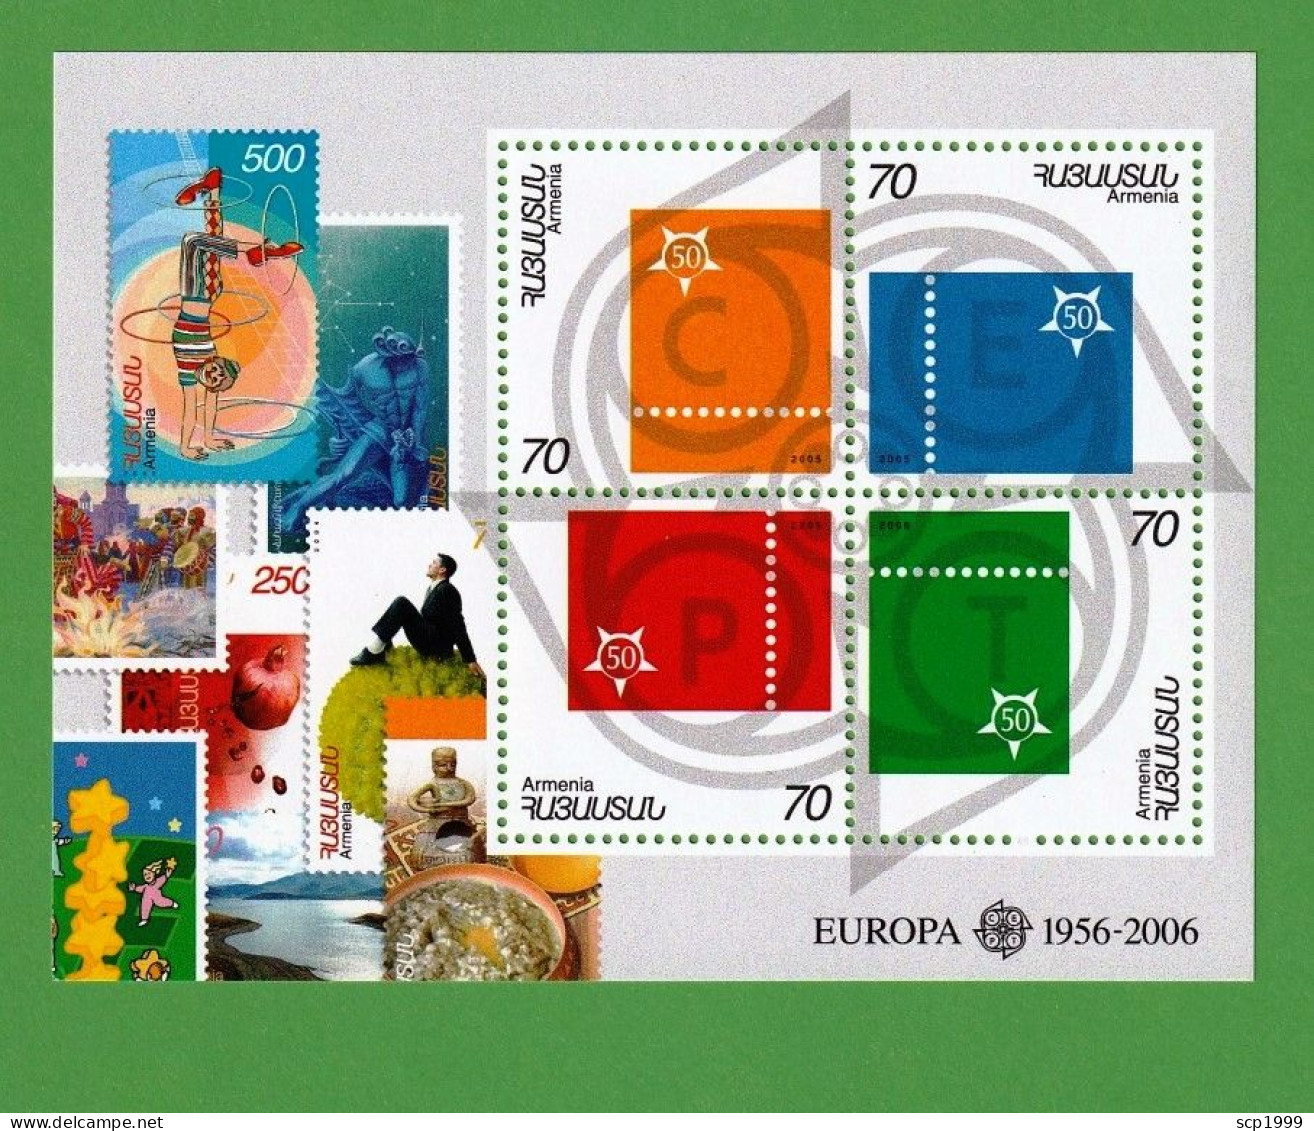 Armenia 2006 - Europa 50 Years Stamps S/S MNH - Armenia